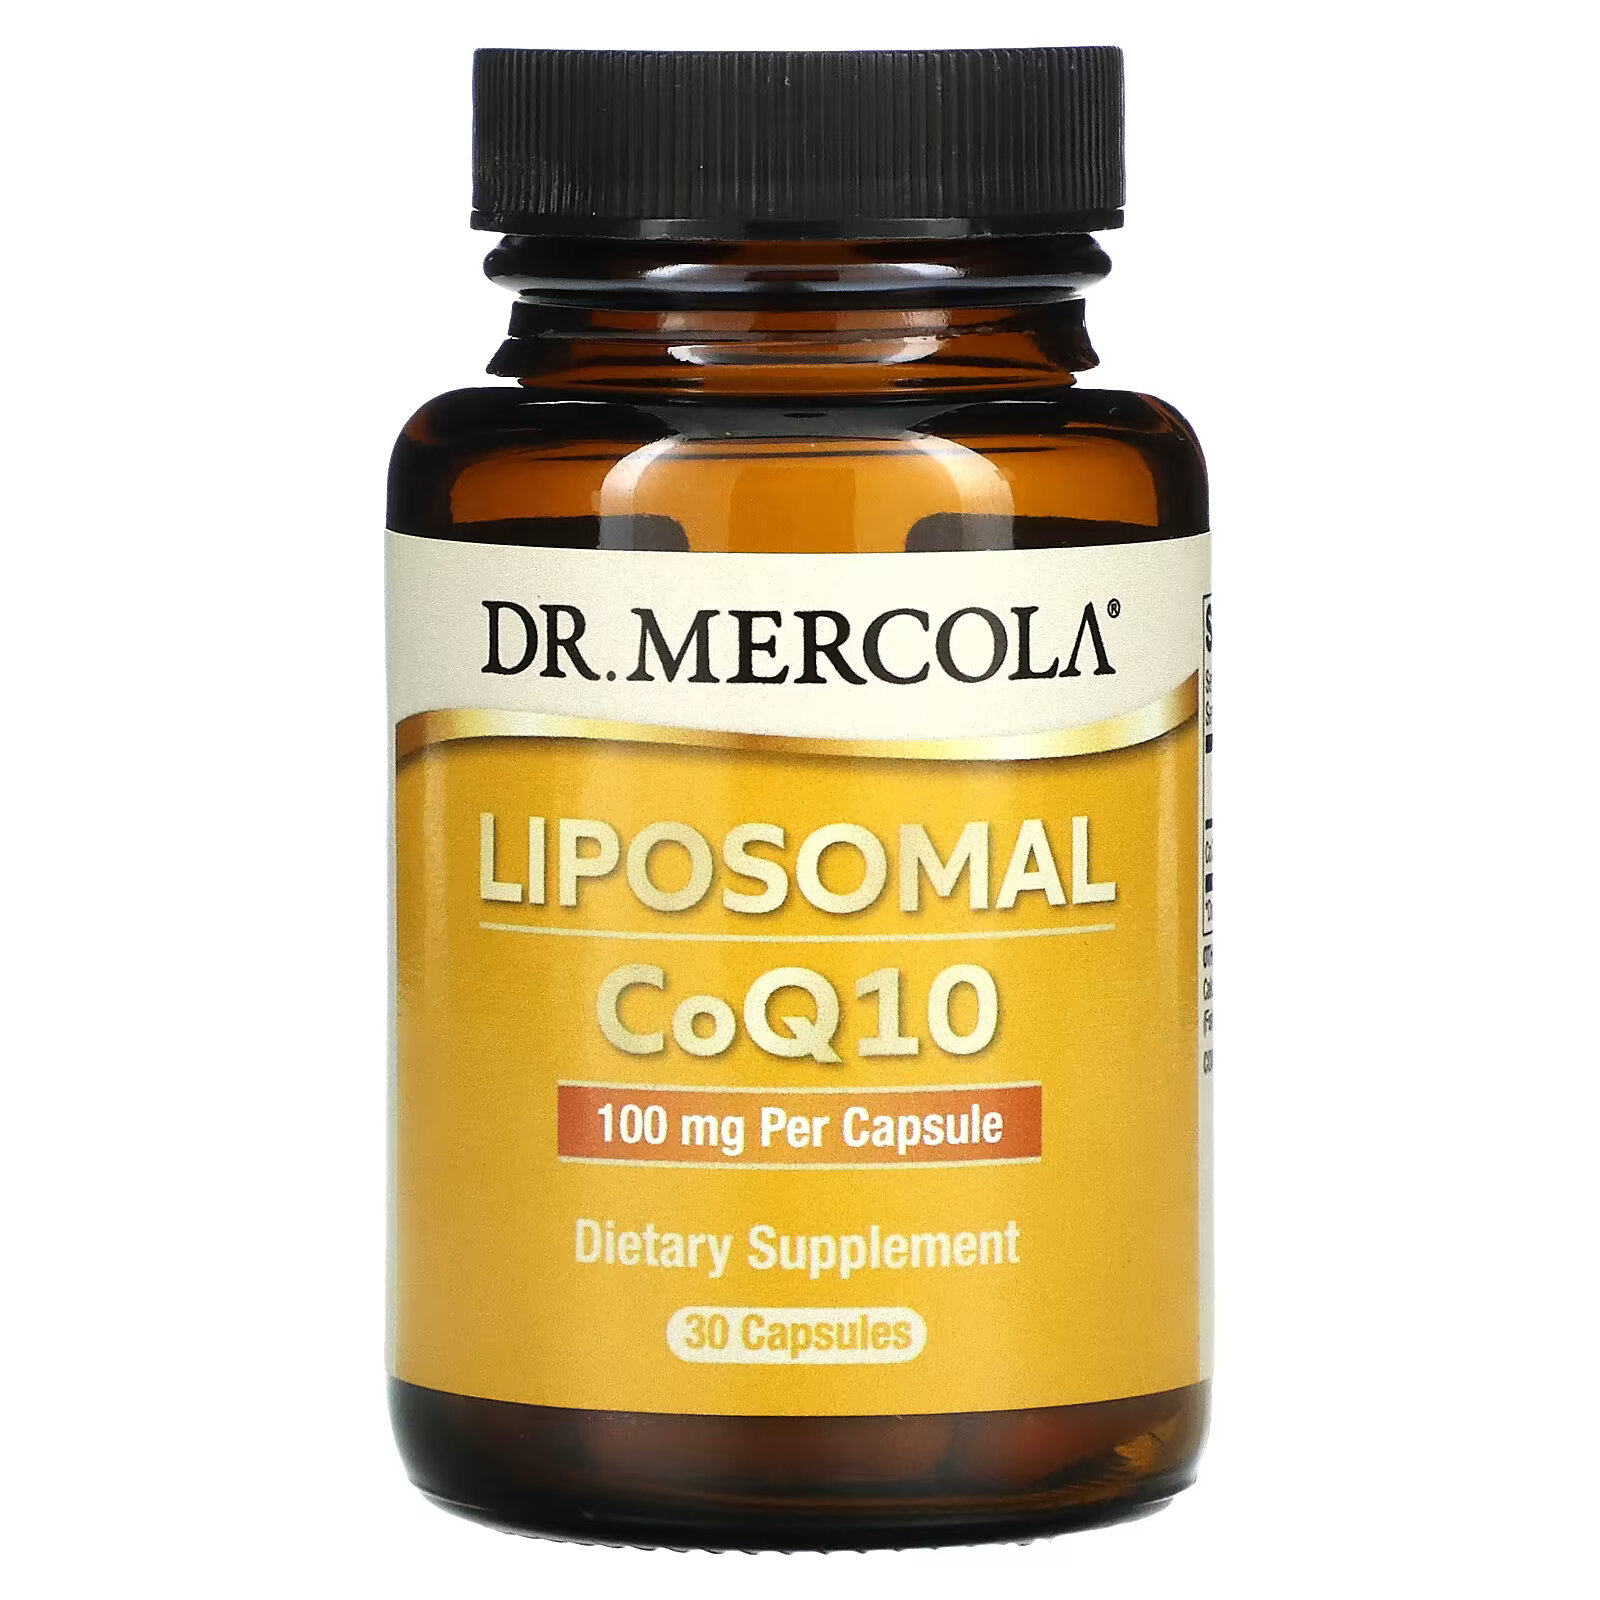 dr mercola липосомальный коэнзим q10 100 мг 30 капсул Dr. Mercola, липосомальный коэнзим Q10, 100 мг, 30 капсул